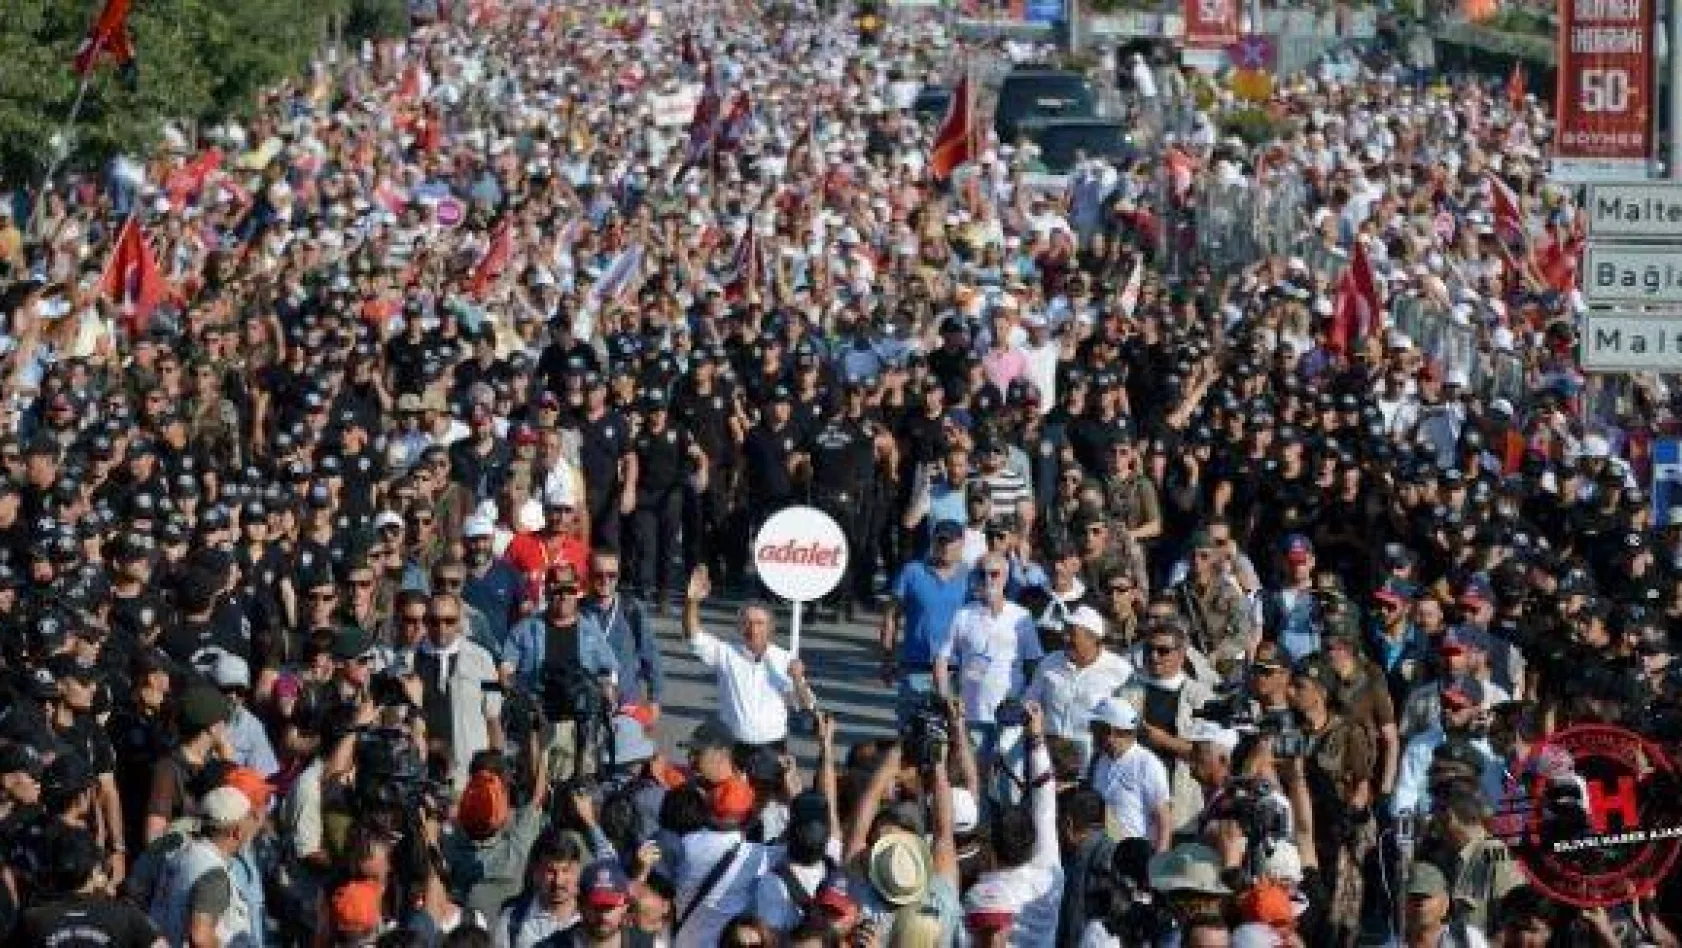 İstanbul Valiliği : " Maltepe'de yaklaşık 175 bin kişi olduğu sonucuna varılmıştır"